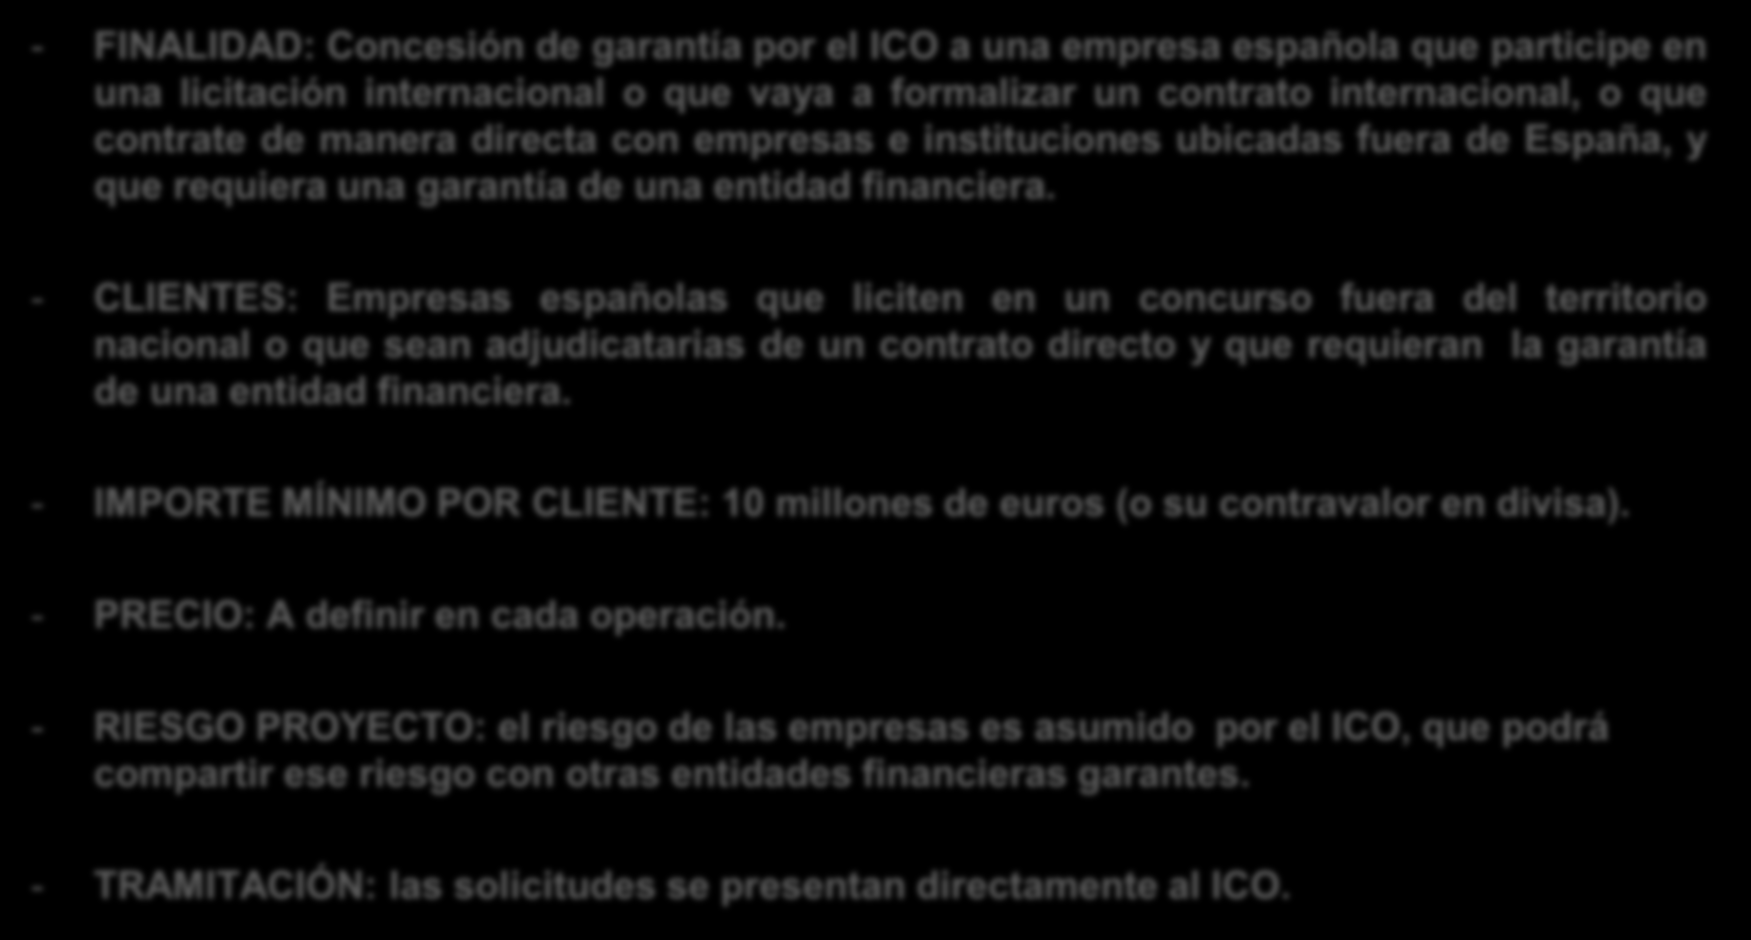 GARANTÍAS INTERNACIONALES : Programa ICO Garantía Internacional - FINALIDAD: Concesión de garantía por el ICO a una empresa española que participe en una licitación internacional o que vaya a